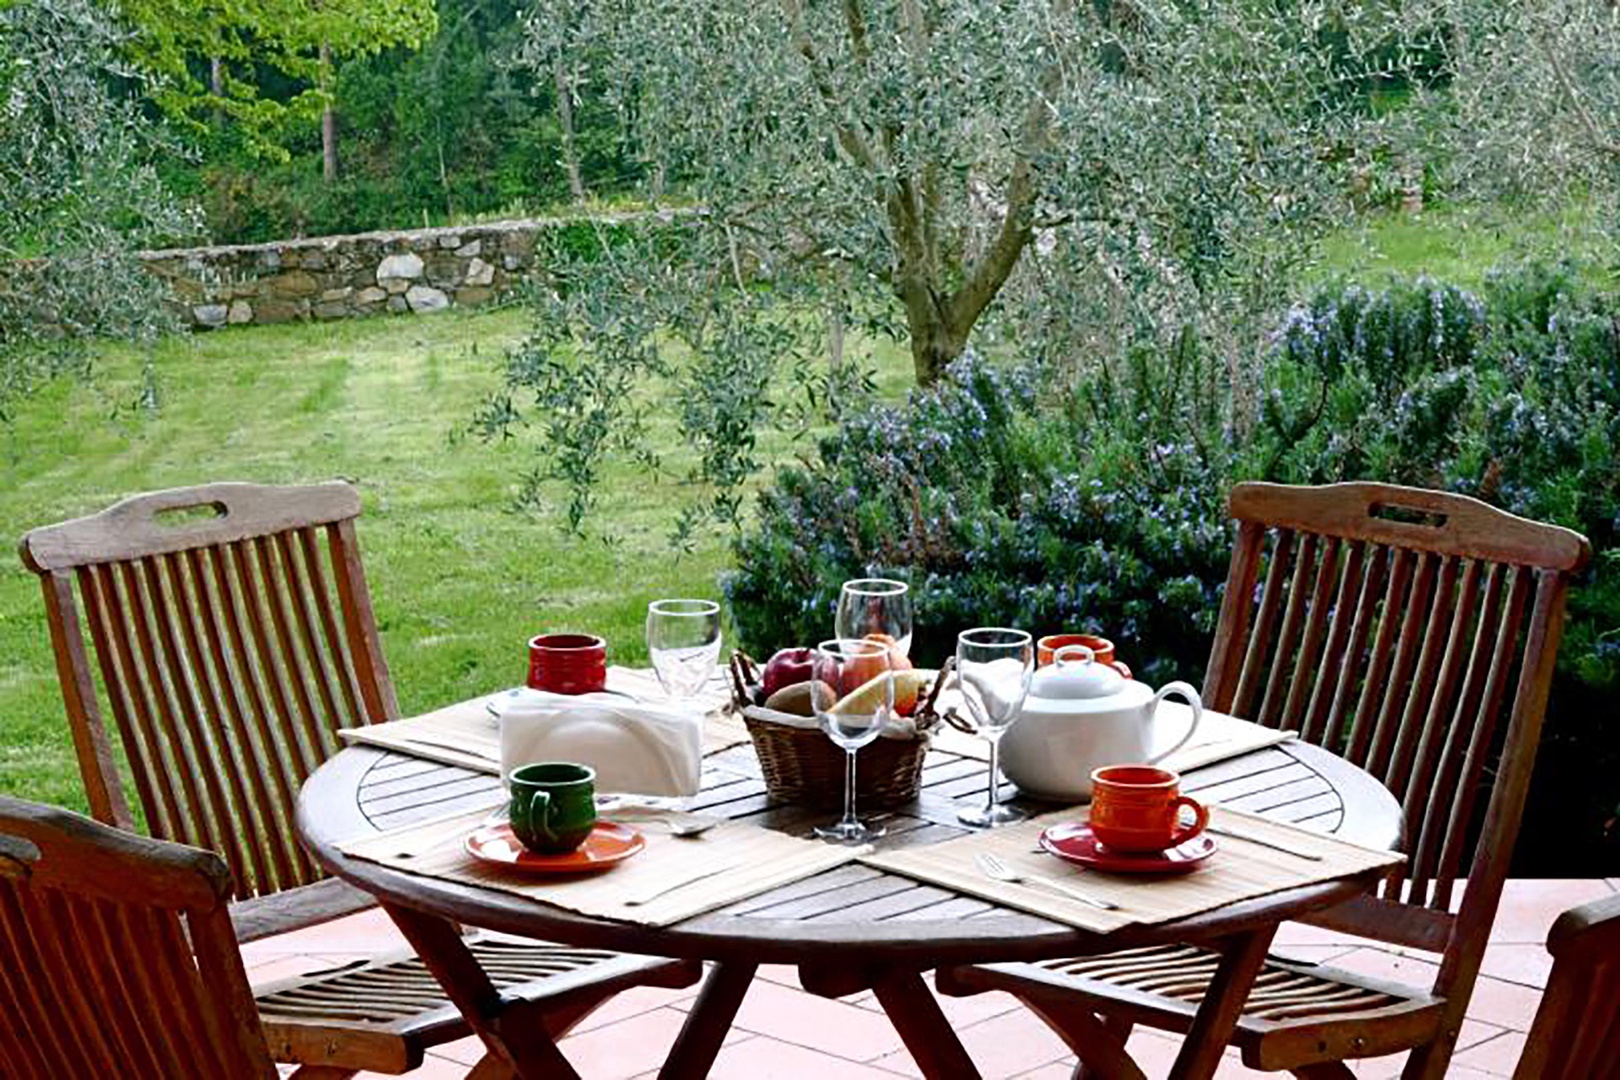 Enjoy breakfast on the open private terrace.